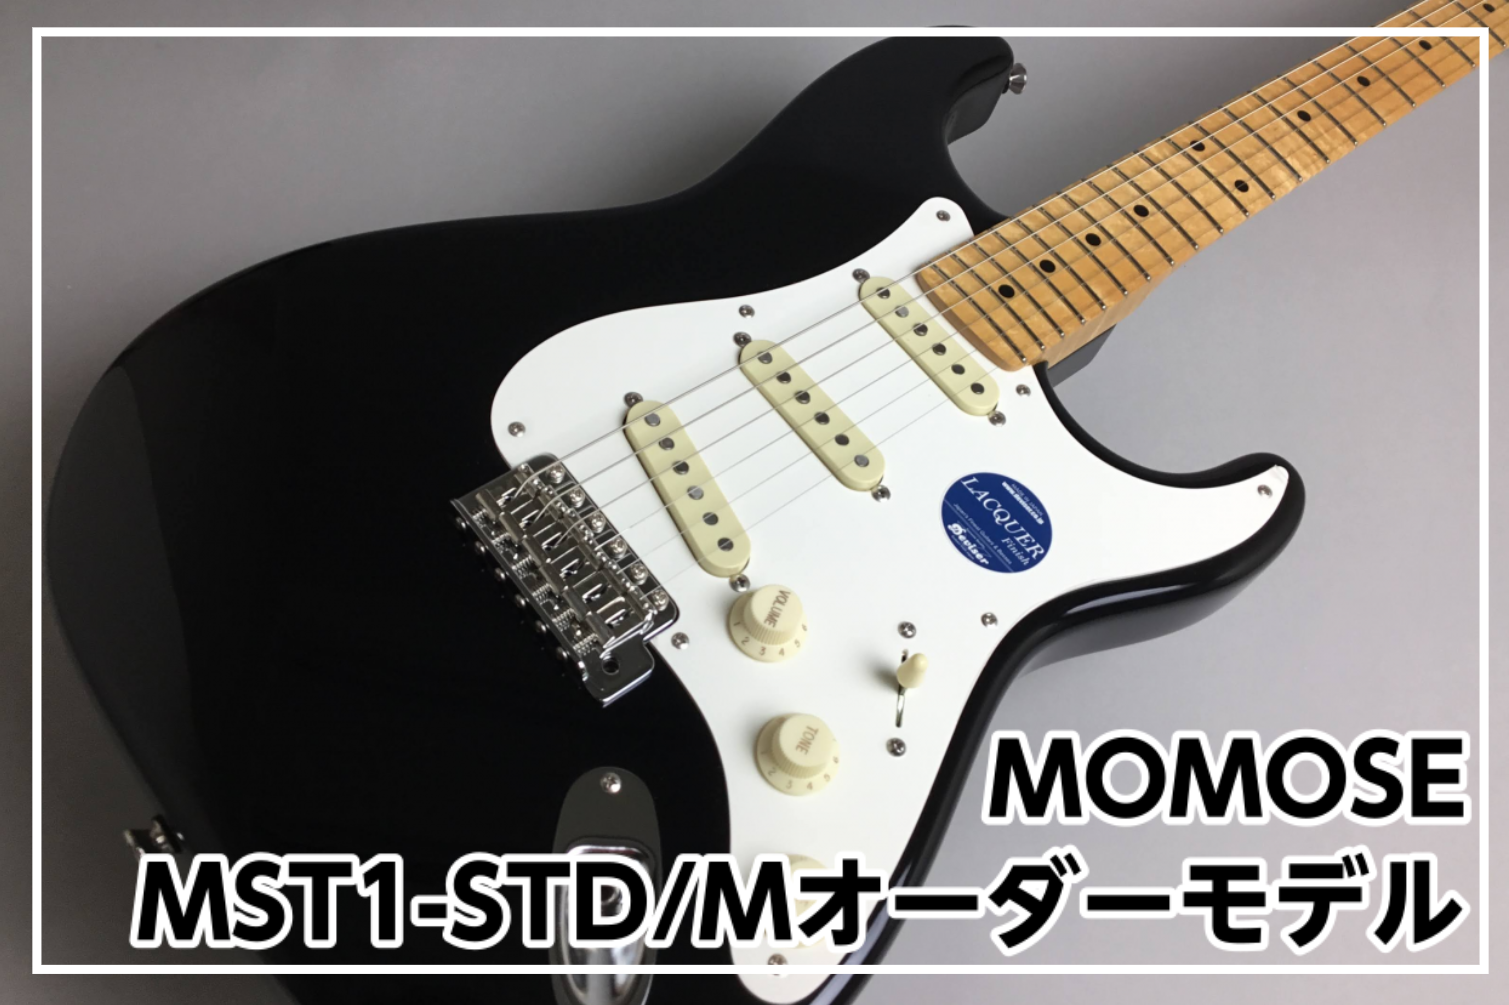 MOMOSE MST1-STD/M/九州地区限定オーダーモデル展示中!!